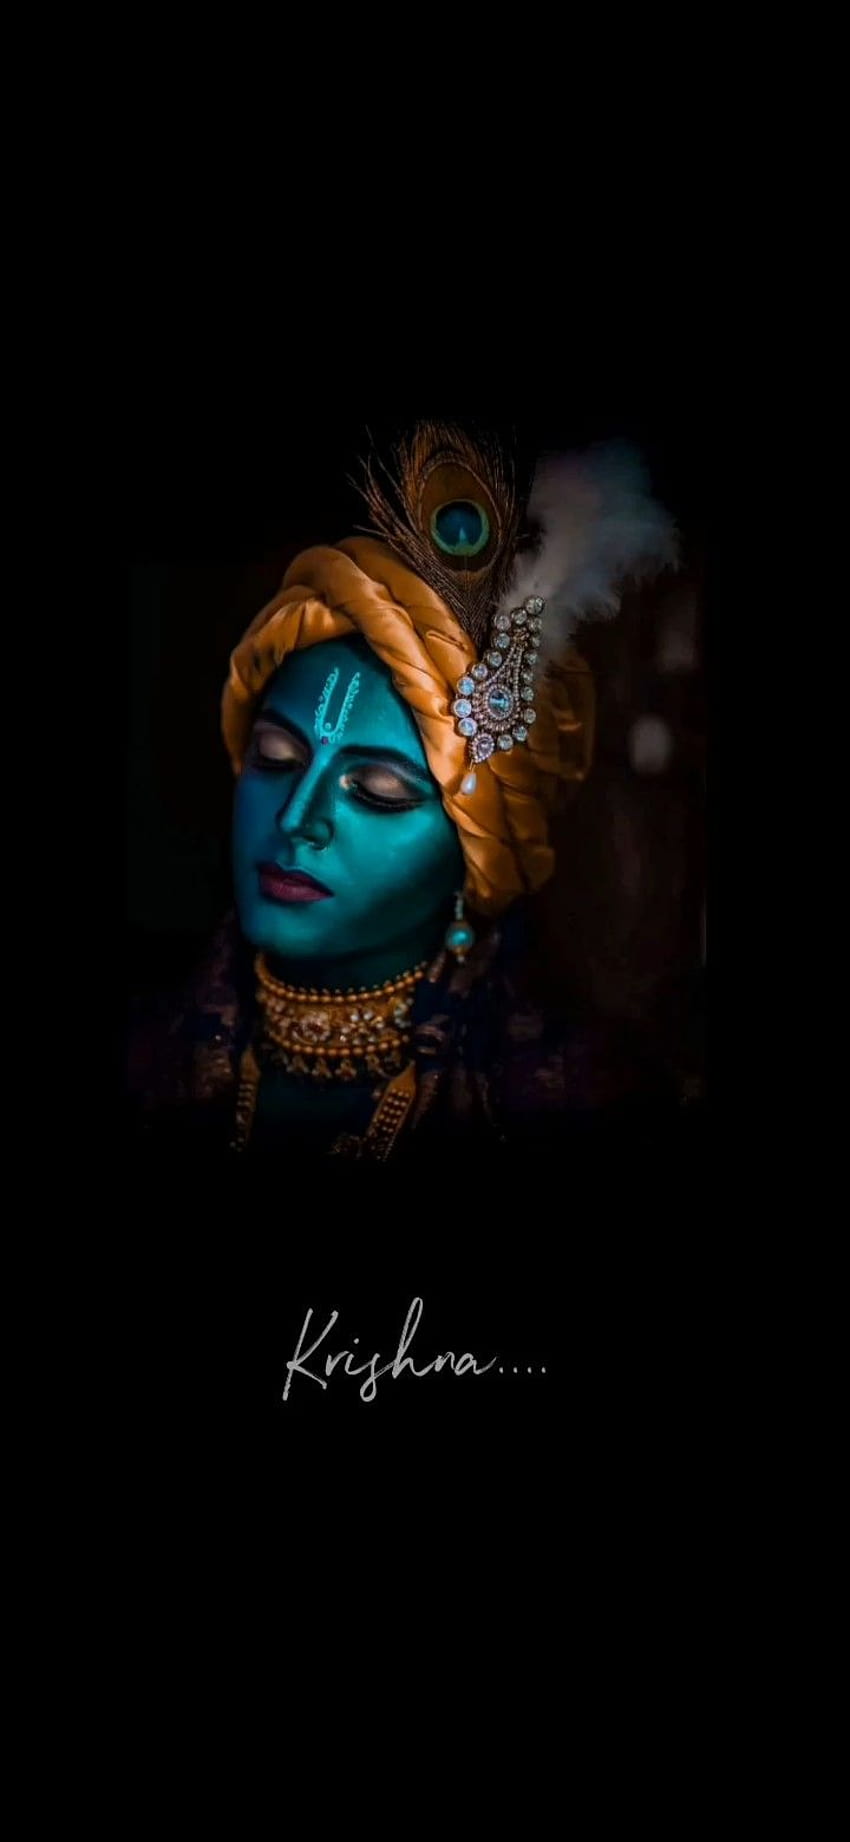 Lord krishna black, lord of krishna HD phone wallpaper | Pxfuel